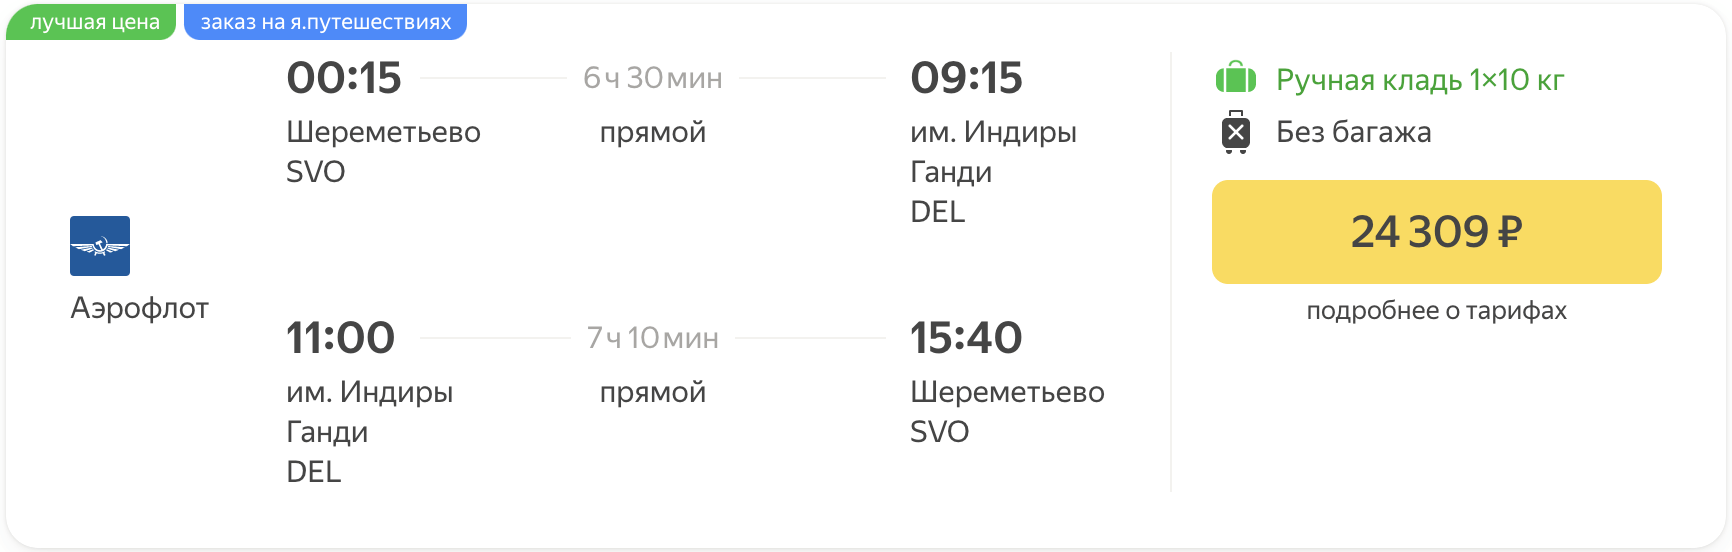 Lētāk! Ar Aeroflot no Maskavas uz Deli no 24300₽ turp un atpakaļ